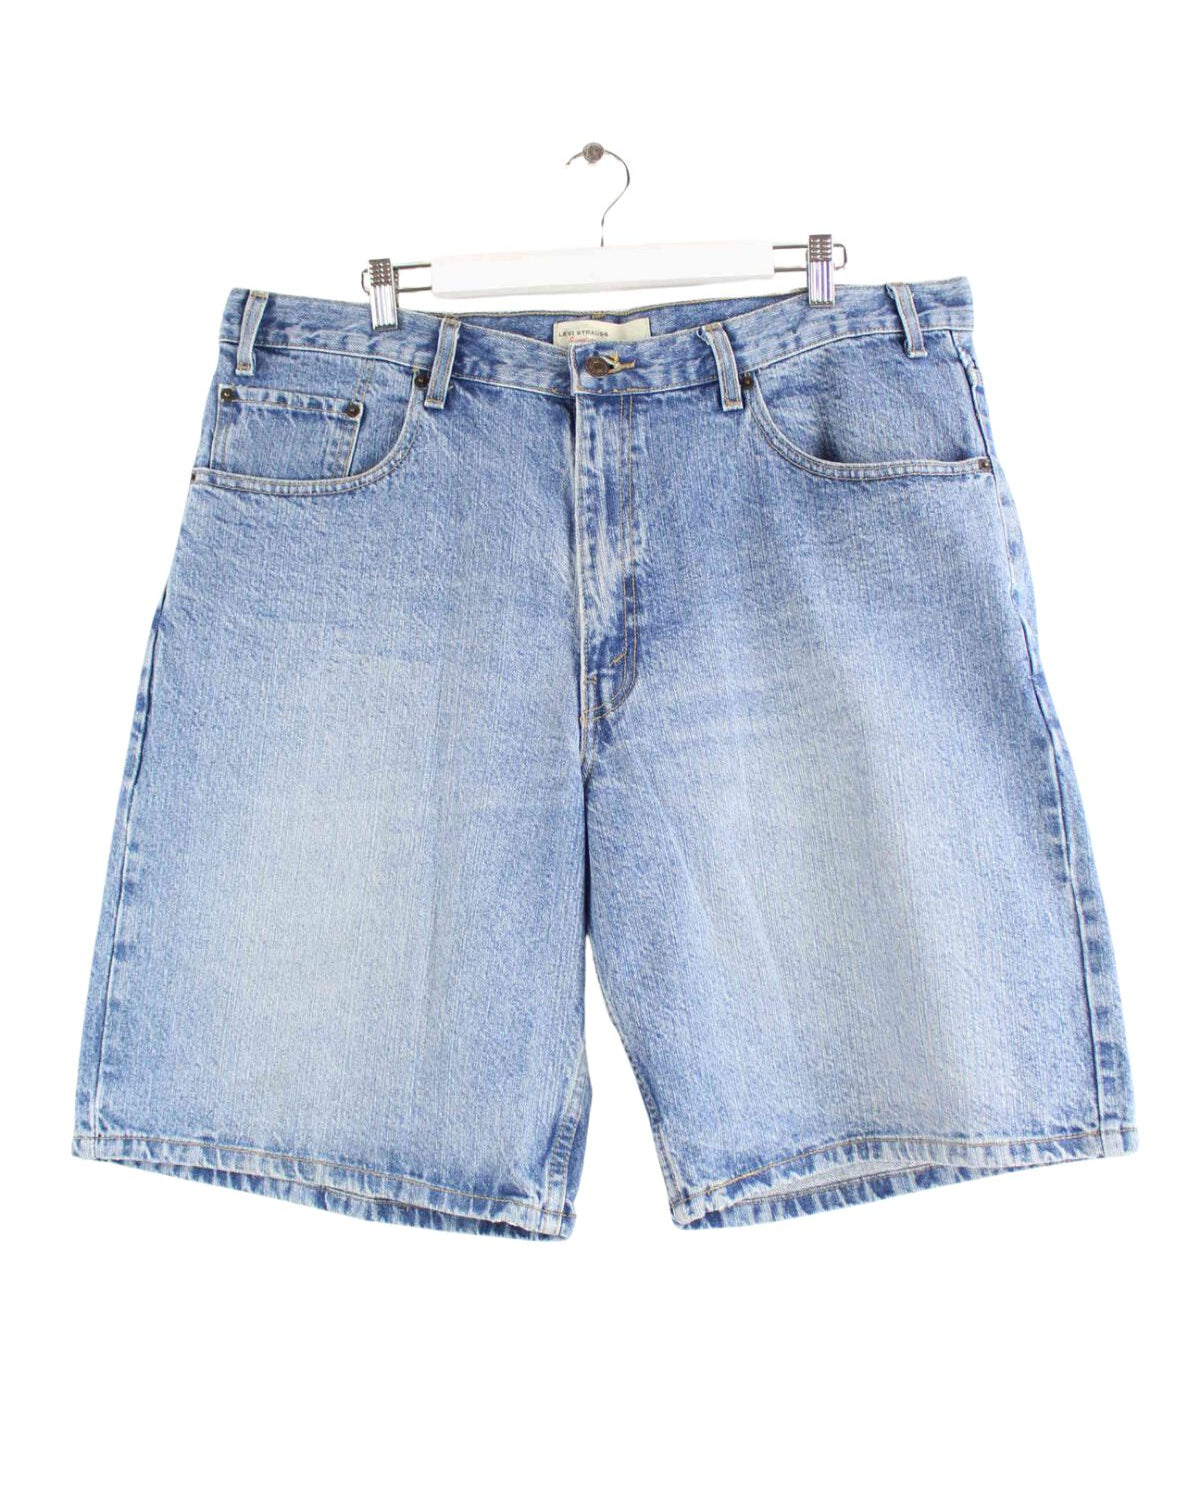 Levi's Signature Jeans Shorts Blau W38 (front image)